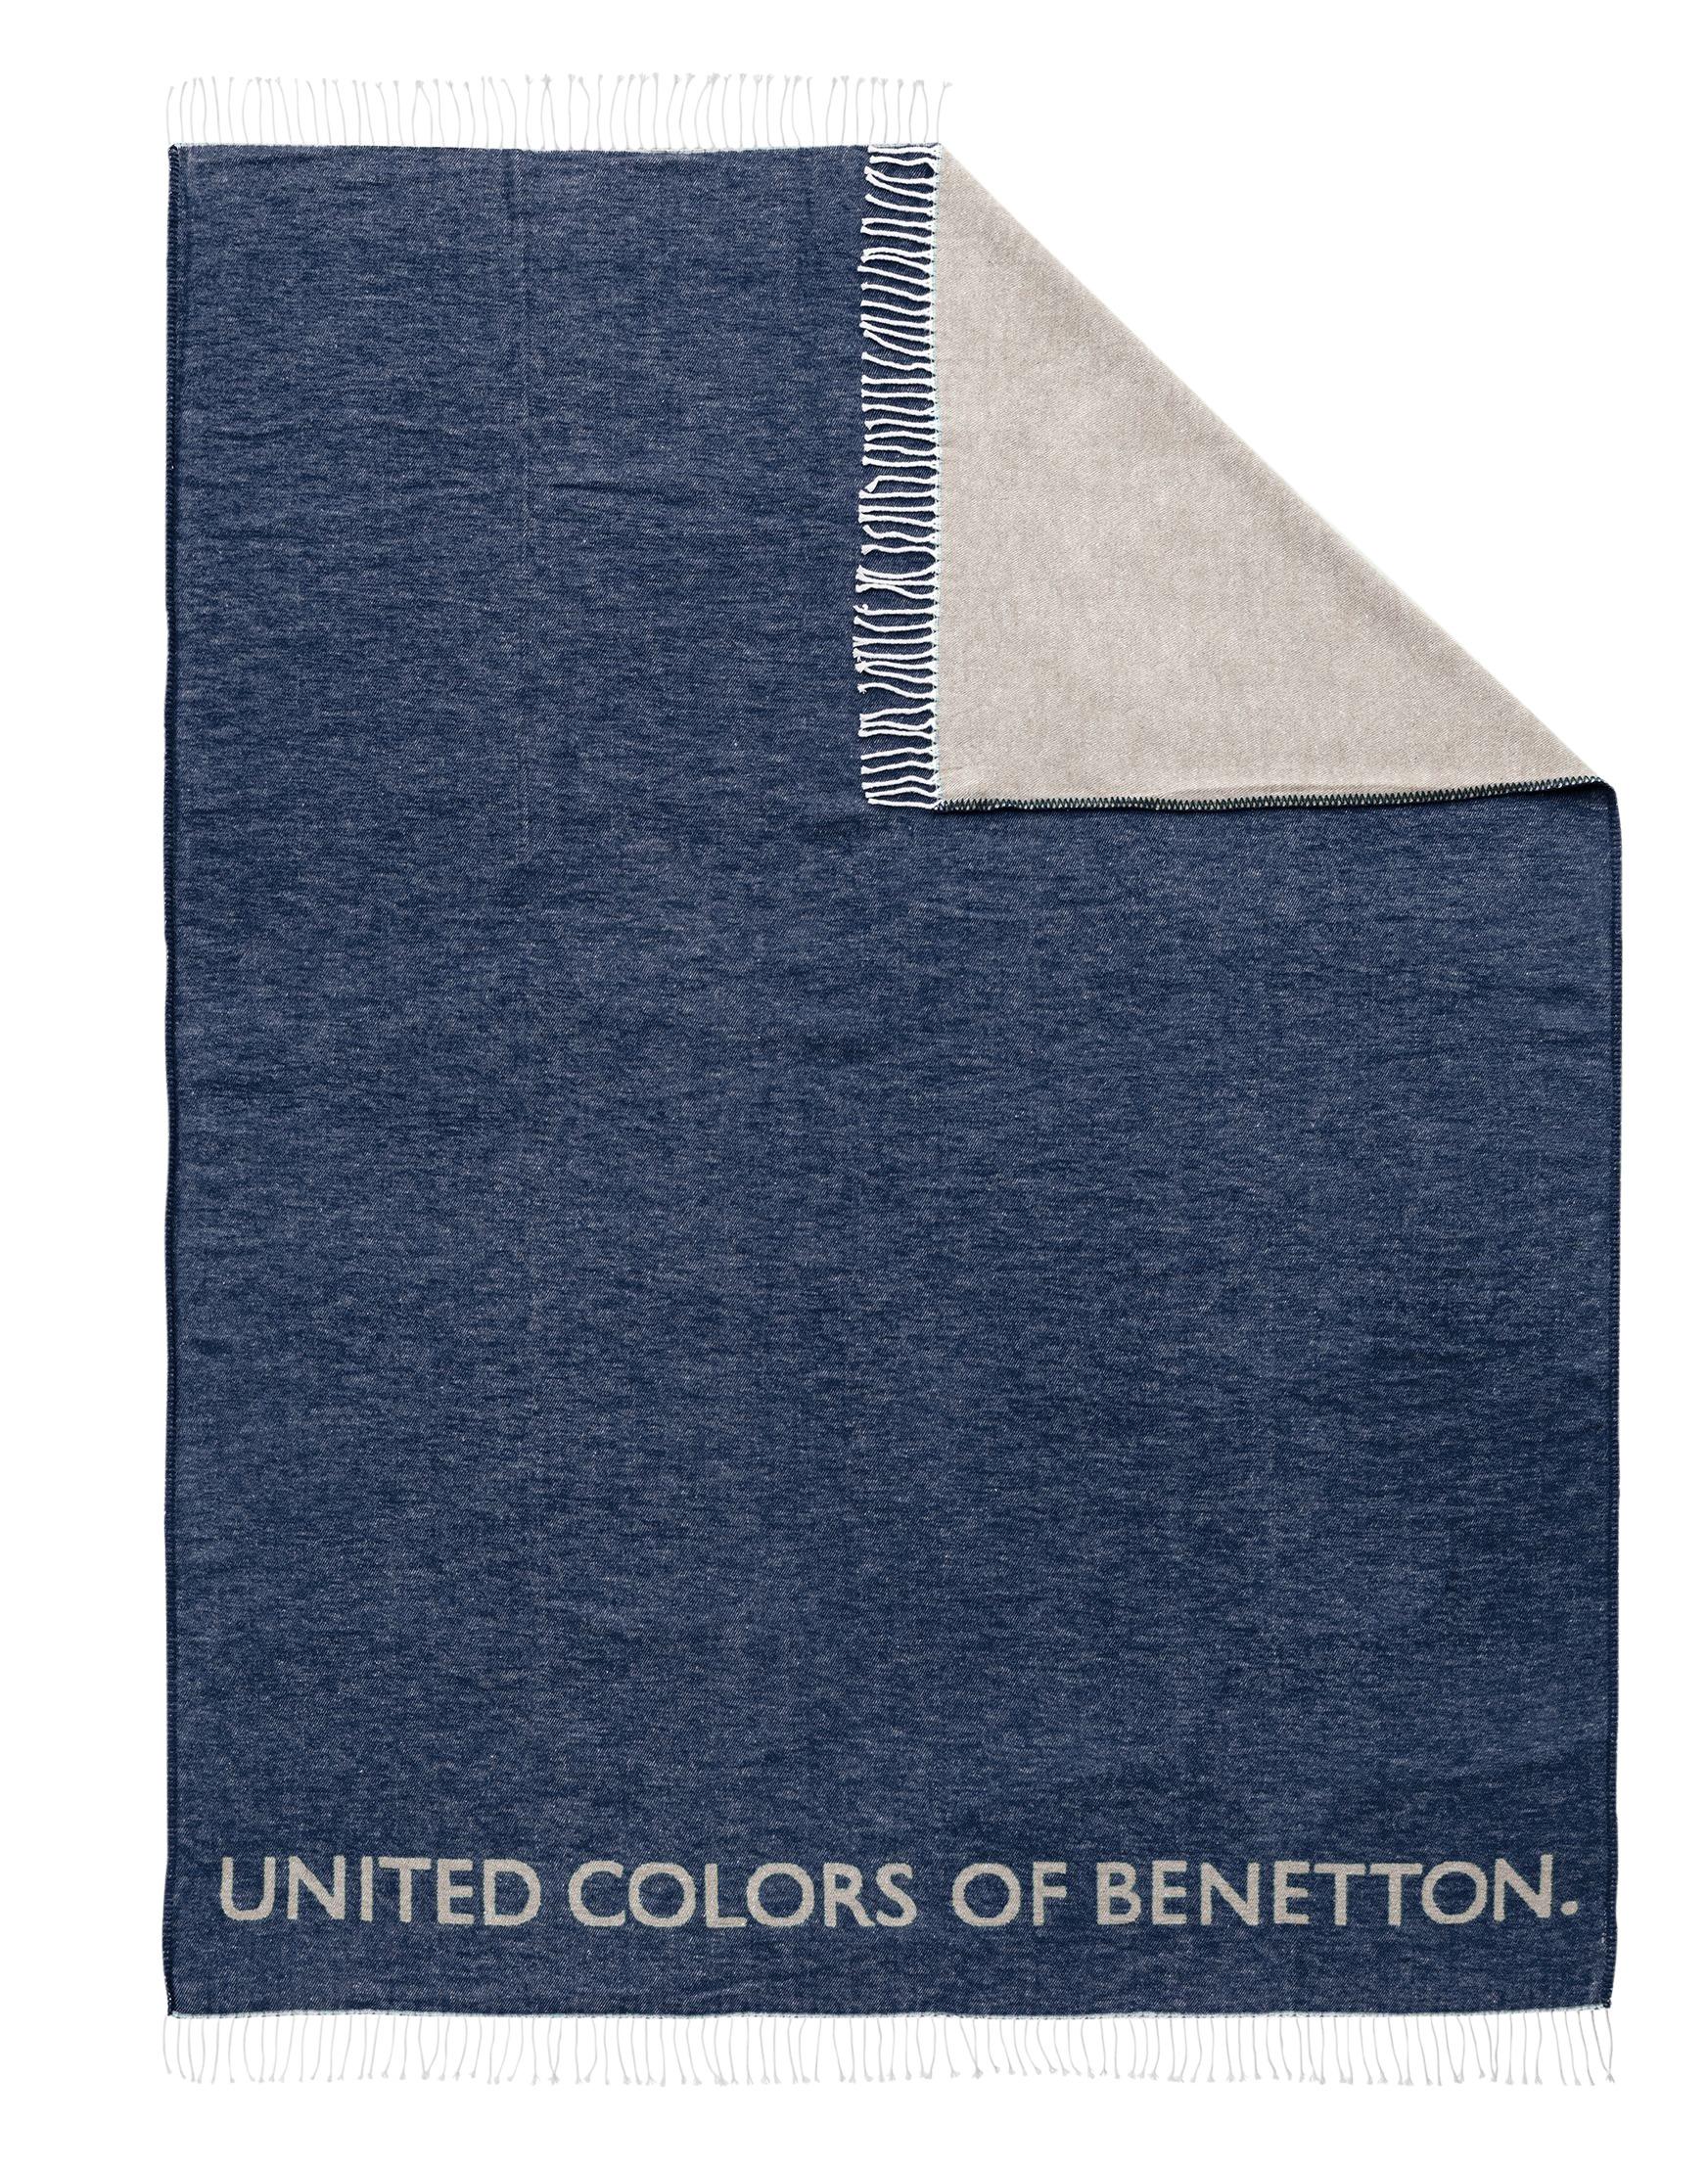 Decke in Blau/Grau online kaufen